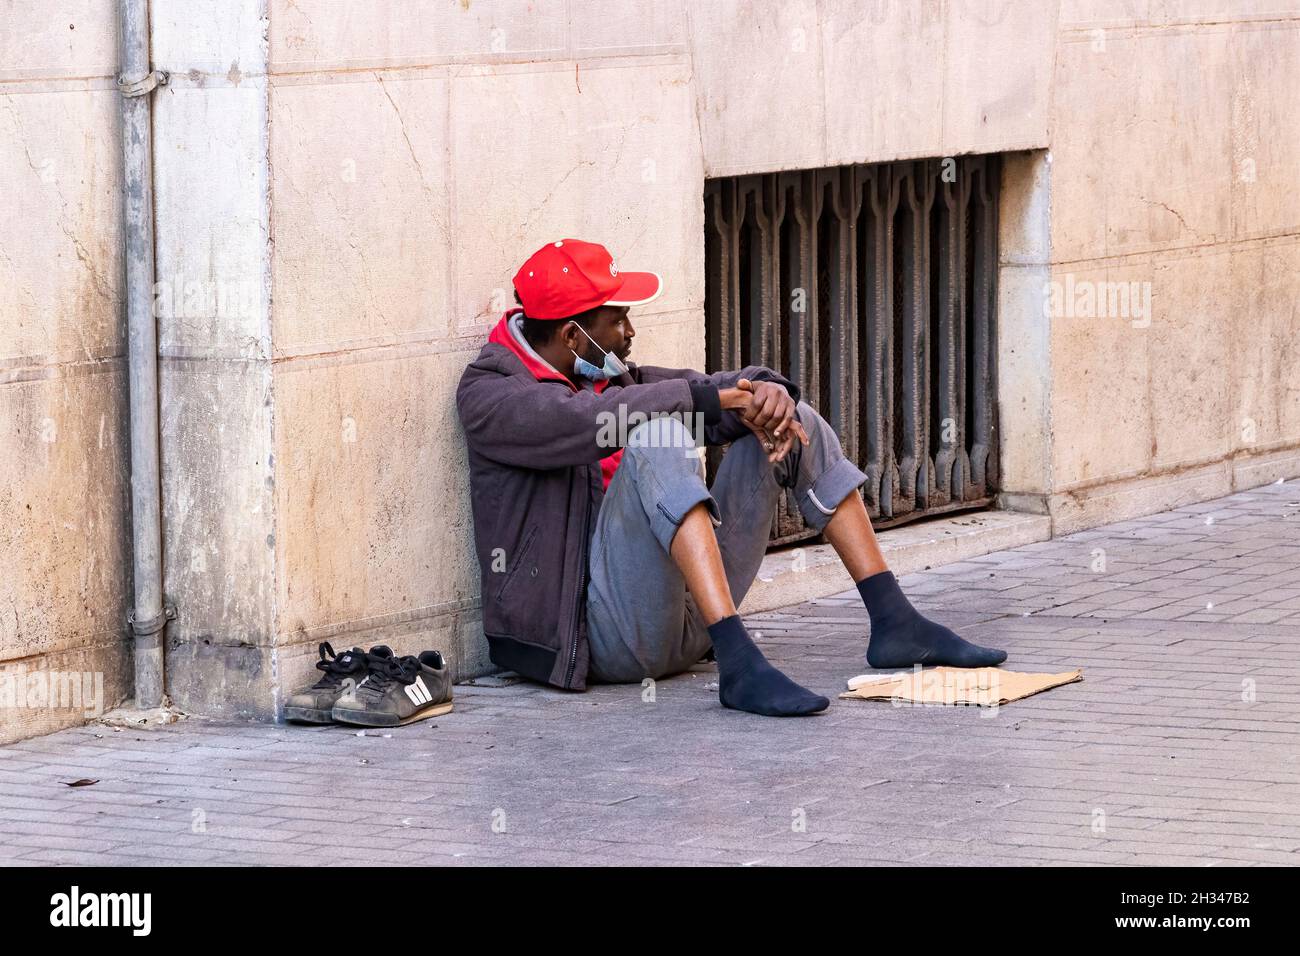 Huelva, Spanien - 24. Oktober 2021: Schwarzer Obdachloser bettelt auf der Straße um Geld Stockfoto